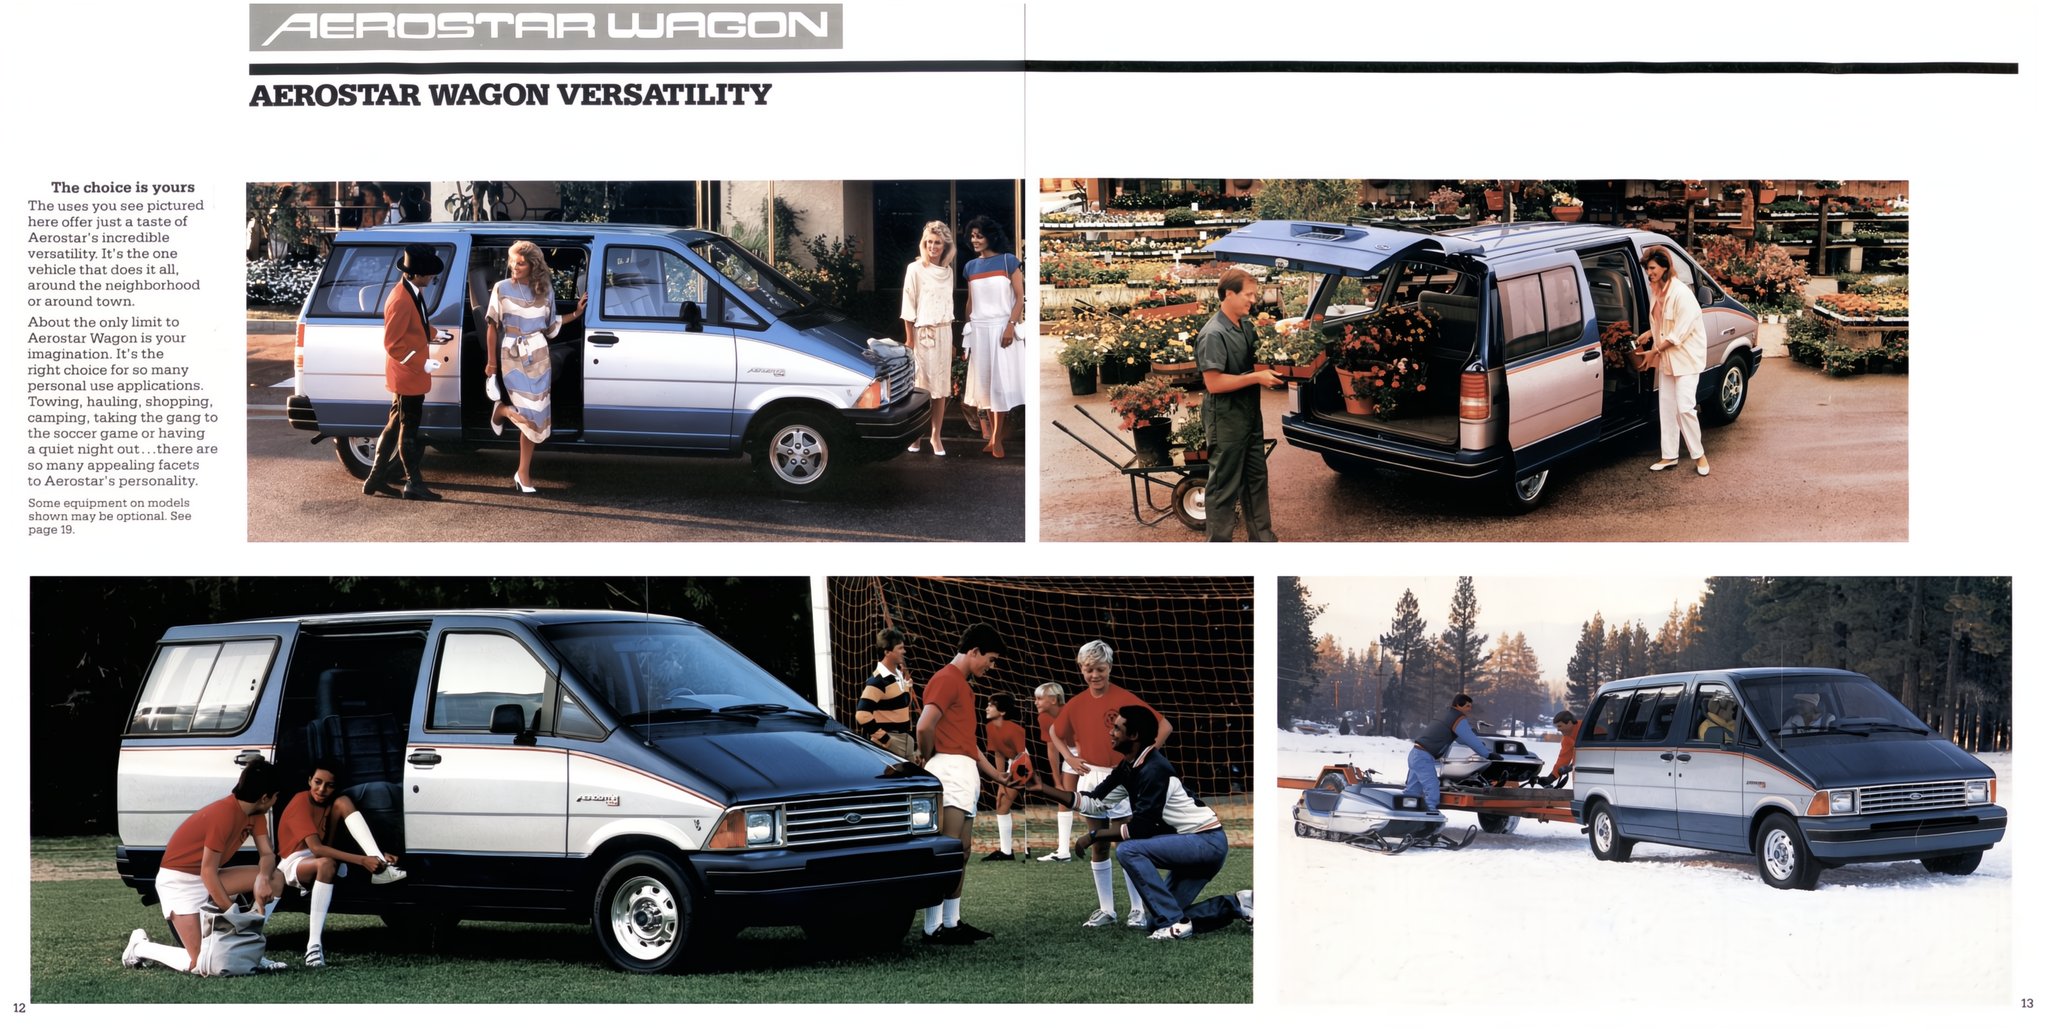 1986 Ford Aerostar Wagon Brochure 12-13